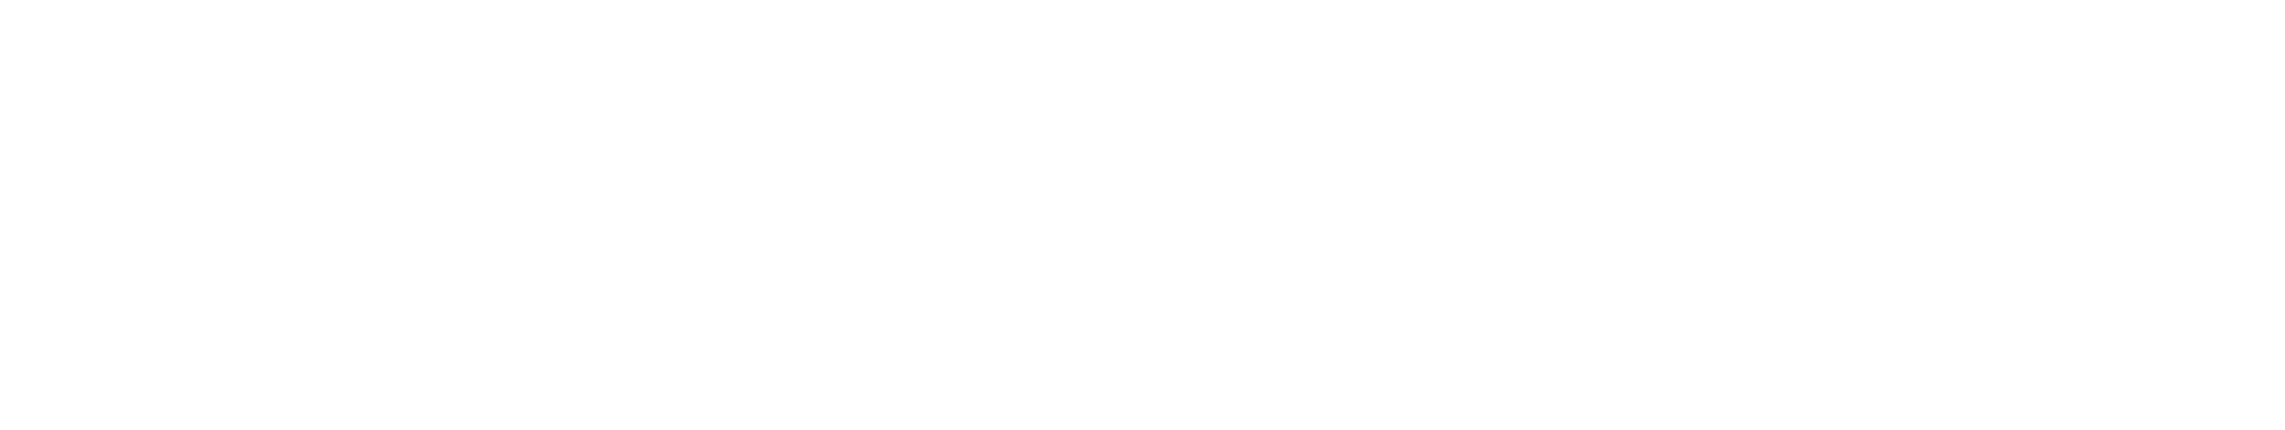 Filmfactory Films